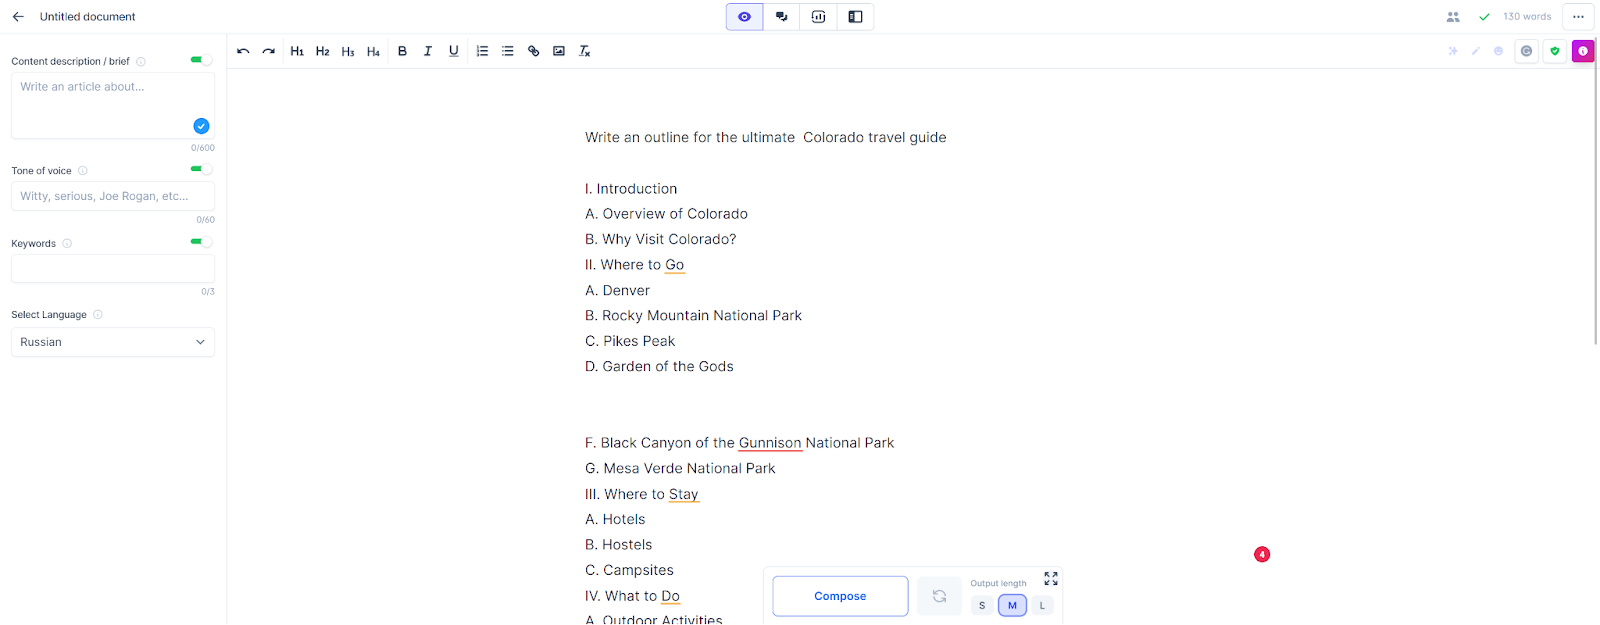   لقطة شاشة تعرض مخطط دليل سفر في كولورادو تم إنشاؤه بواسطة Jasper.ai